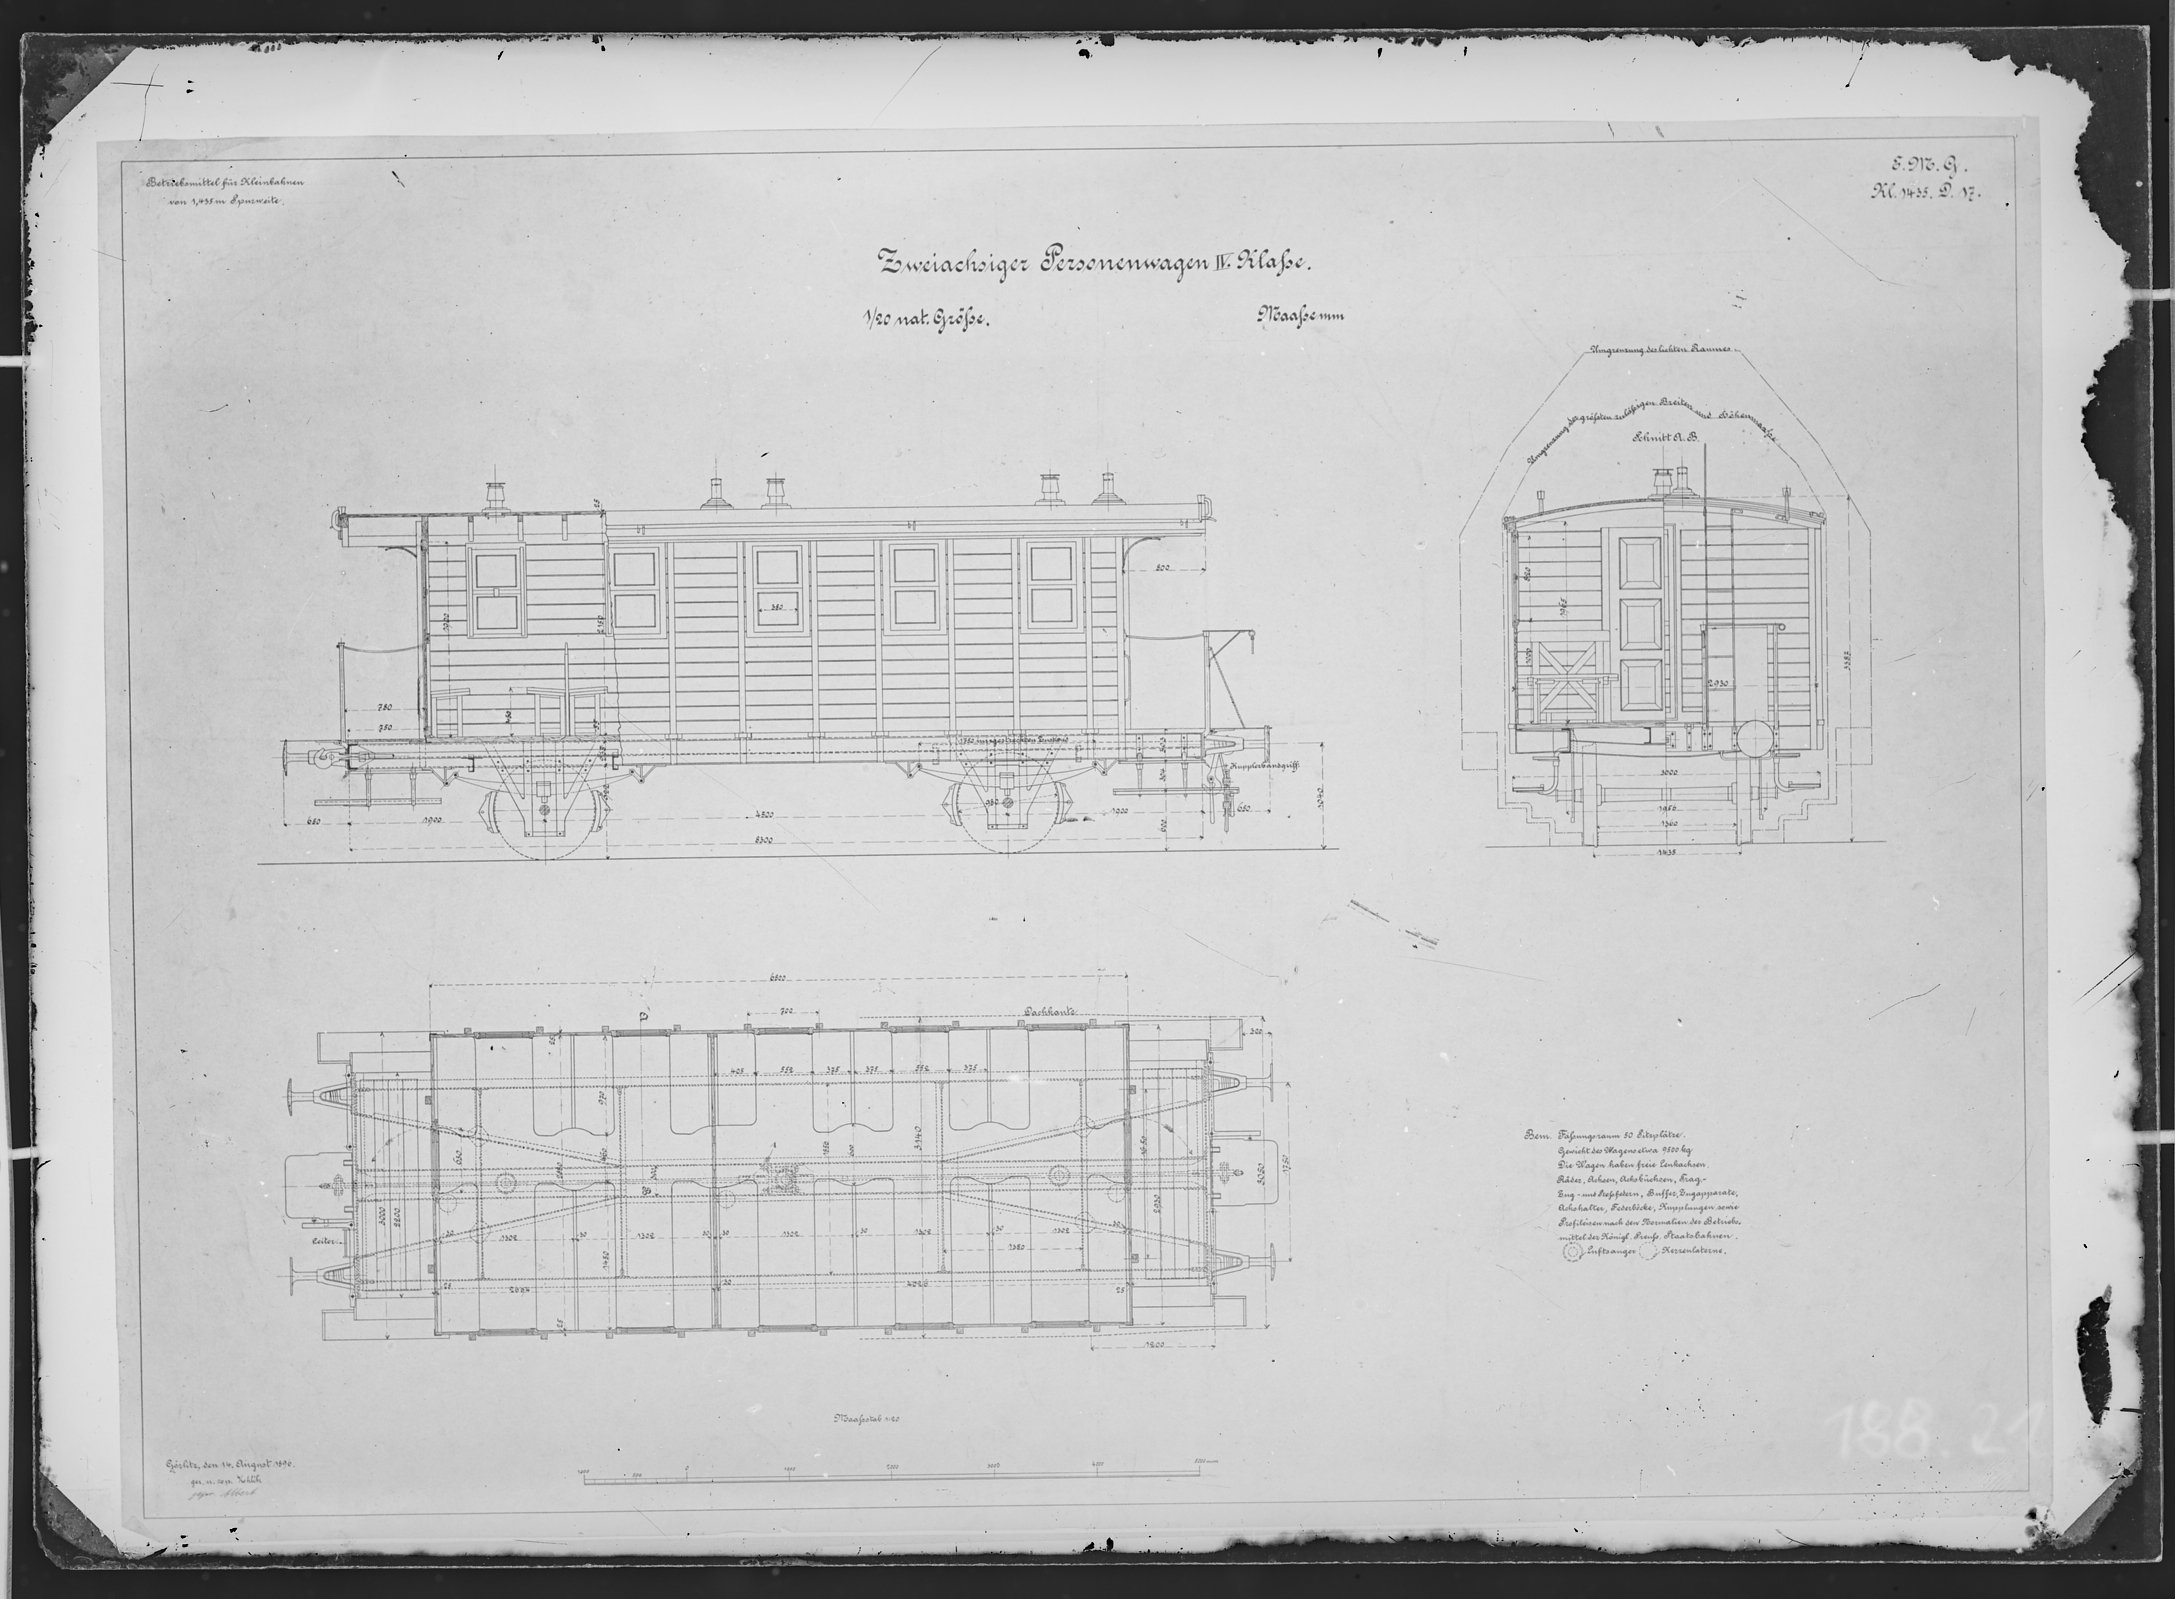 Fotografie: Maßzeichnung eines zweiachsigen Personenwagens vierter Klasse für Kleinbahn, Maßstab 1:20 (Spurweite: 1435 mm), 1896. (Verkehrsmuseum Dresden CC BY-NC-SA)